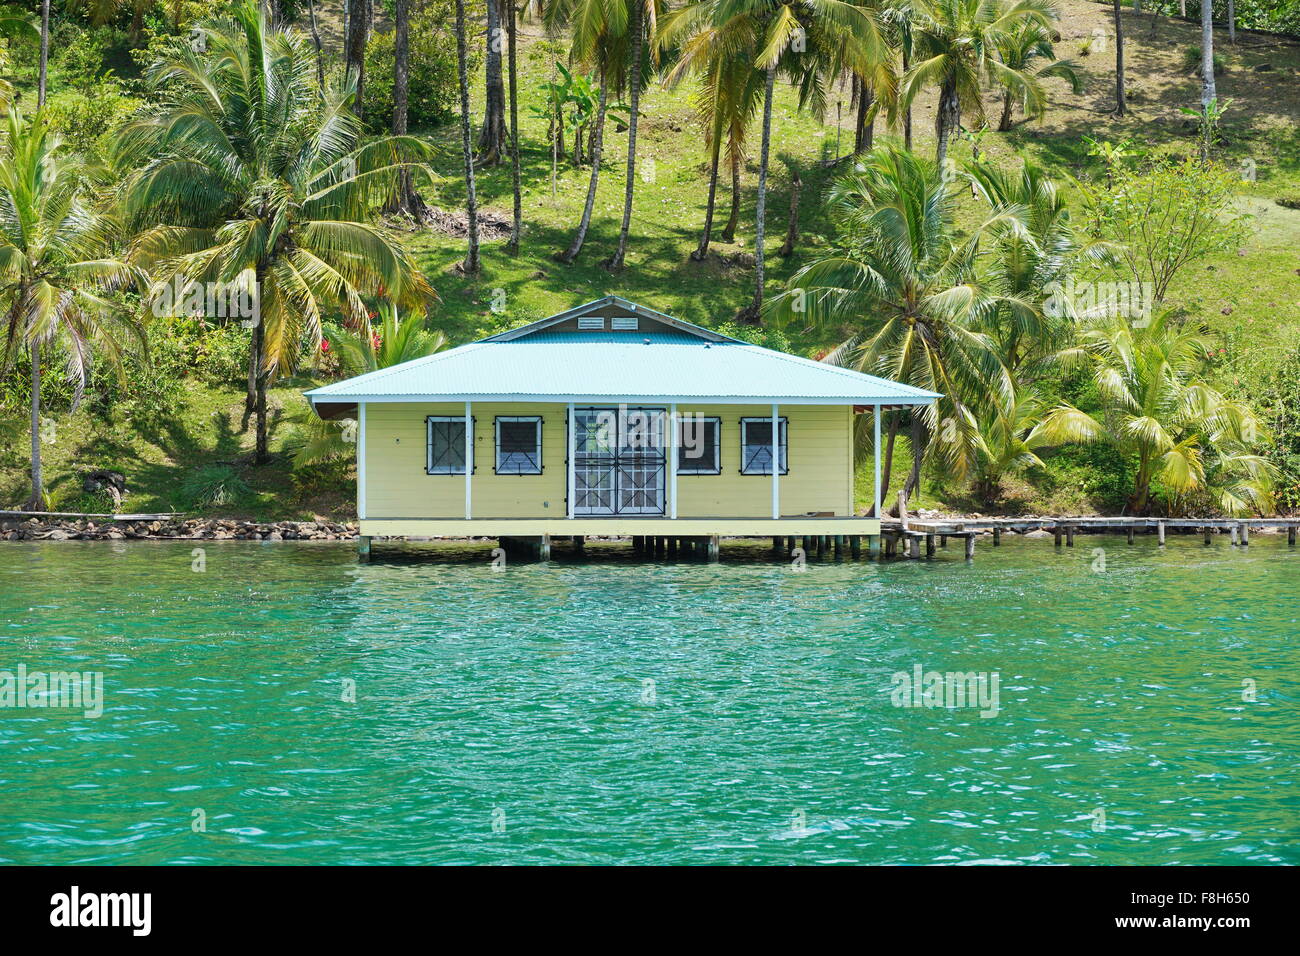 Casa tropicale sull'acqua con palme da cocco sulla riva, visto dal mare dei Caraibi, Panama America Centrale Foto Stock